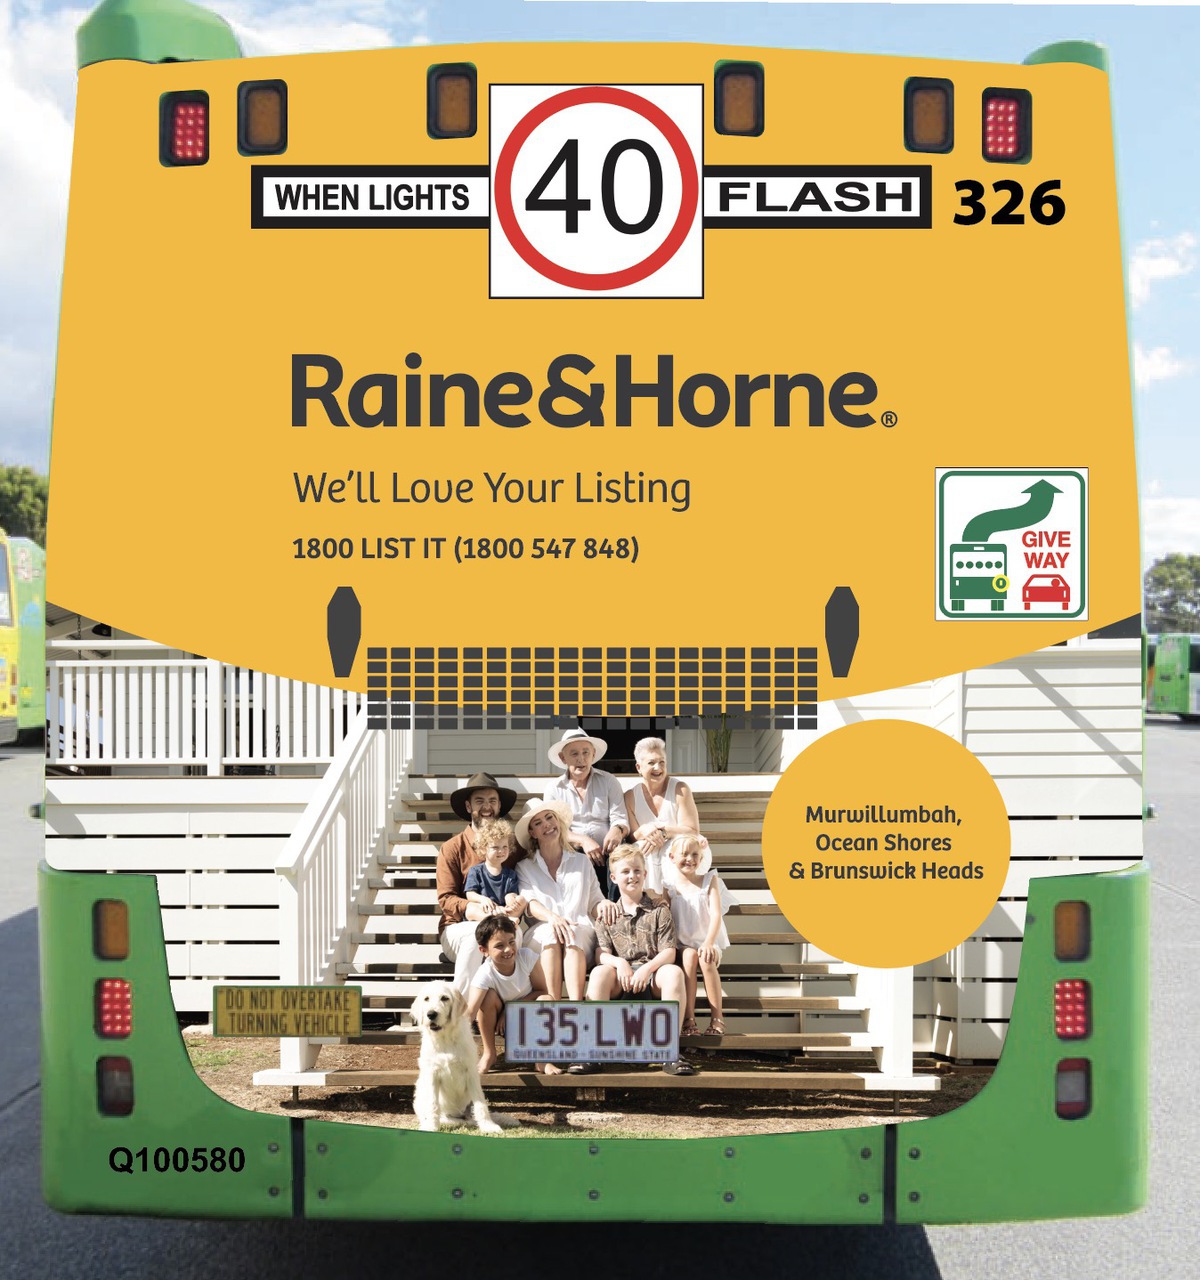 Raine & Horne Bus Wrap